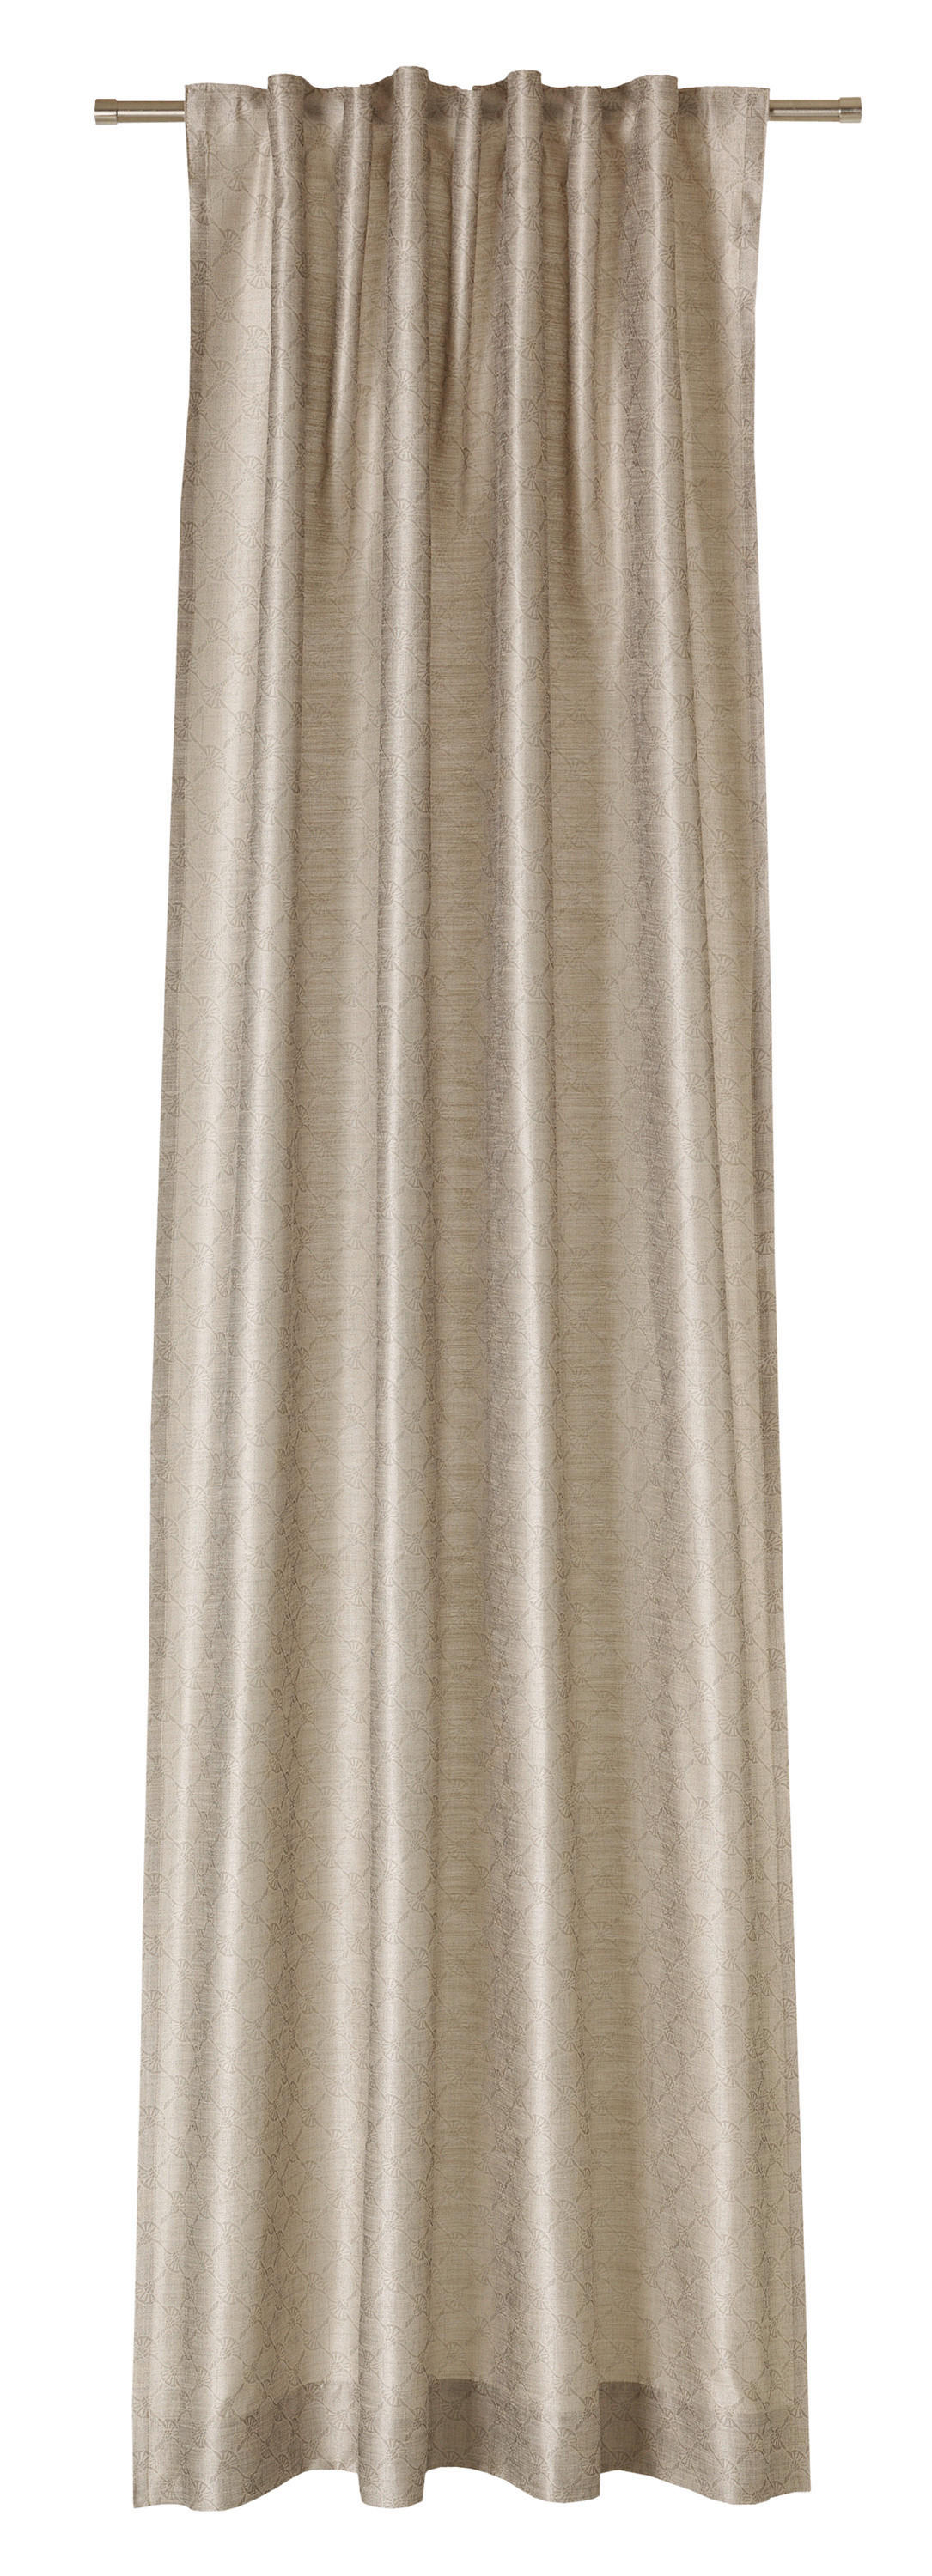 VORHANGSCHAL Silk Allover blickdicht 130/250 cm   - Beige, Design, Textil (130/250cm) - Joop!